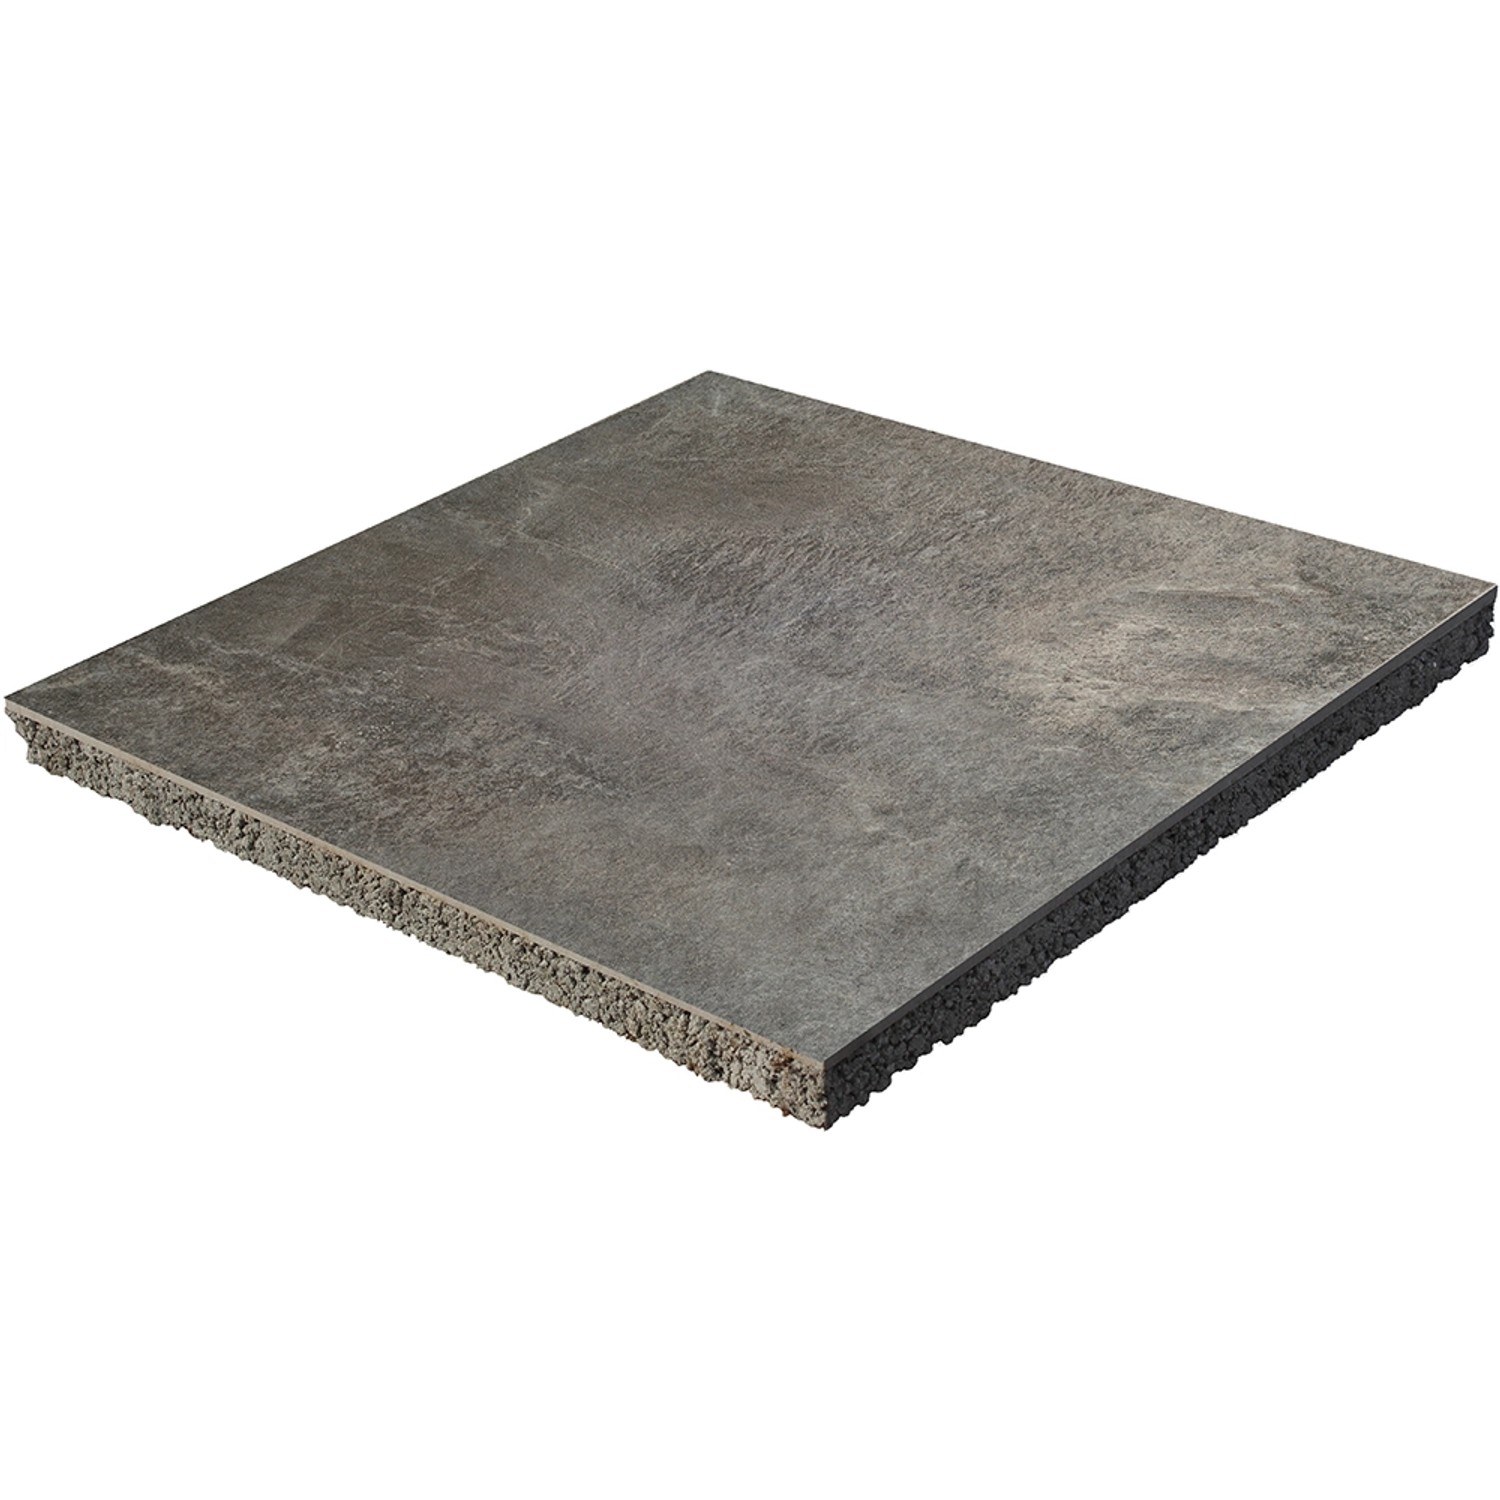 Diephaus Terrassenplatte Keramikverbund Basalt 60 x 60 x 4 cm